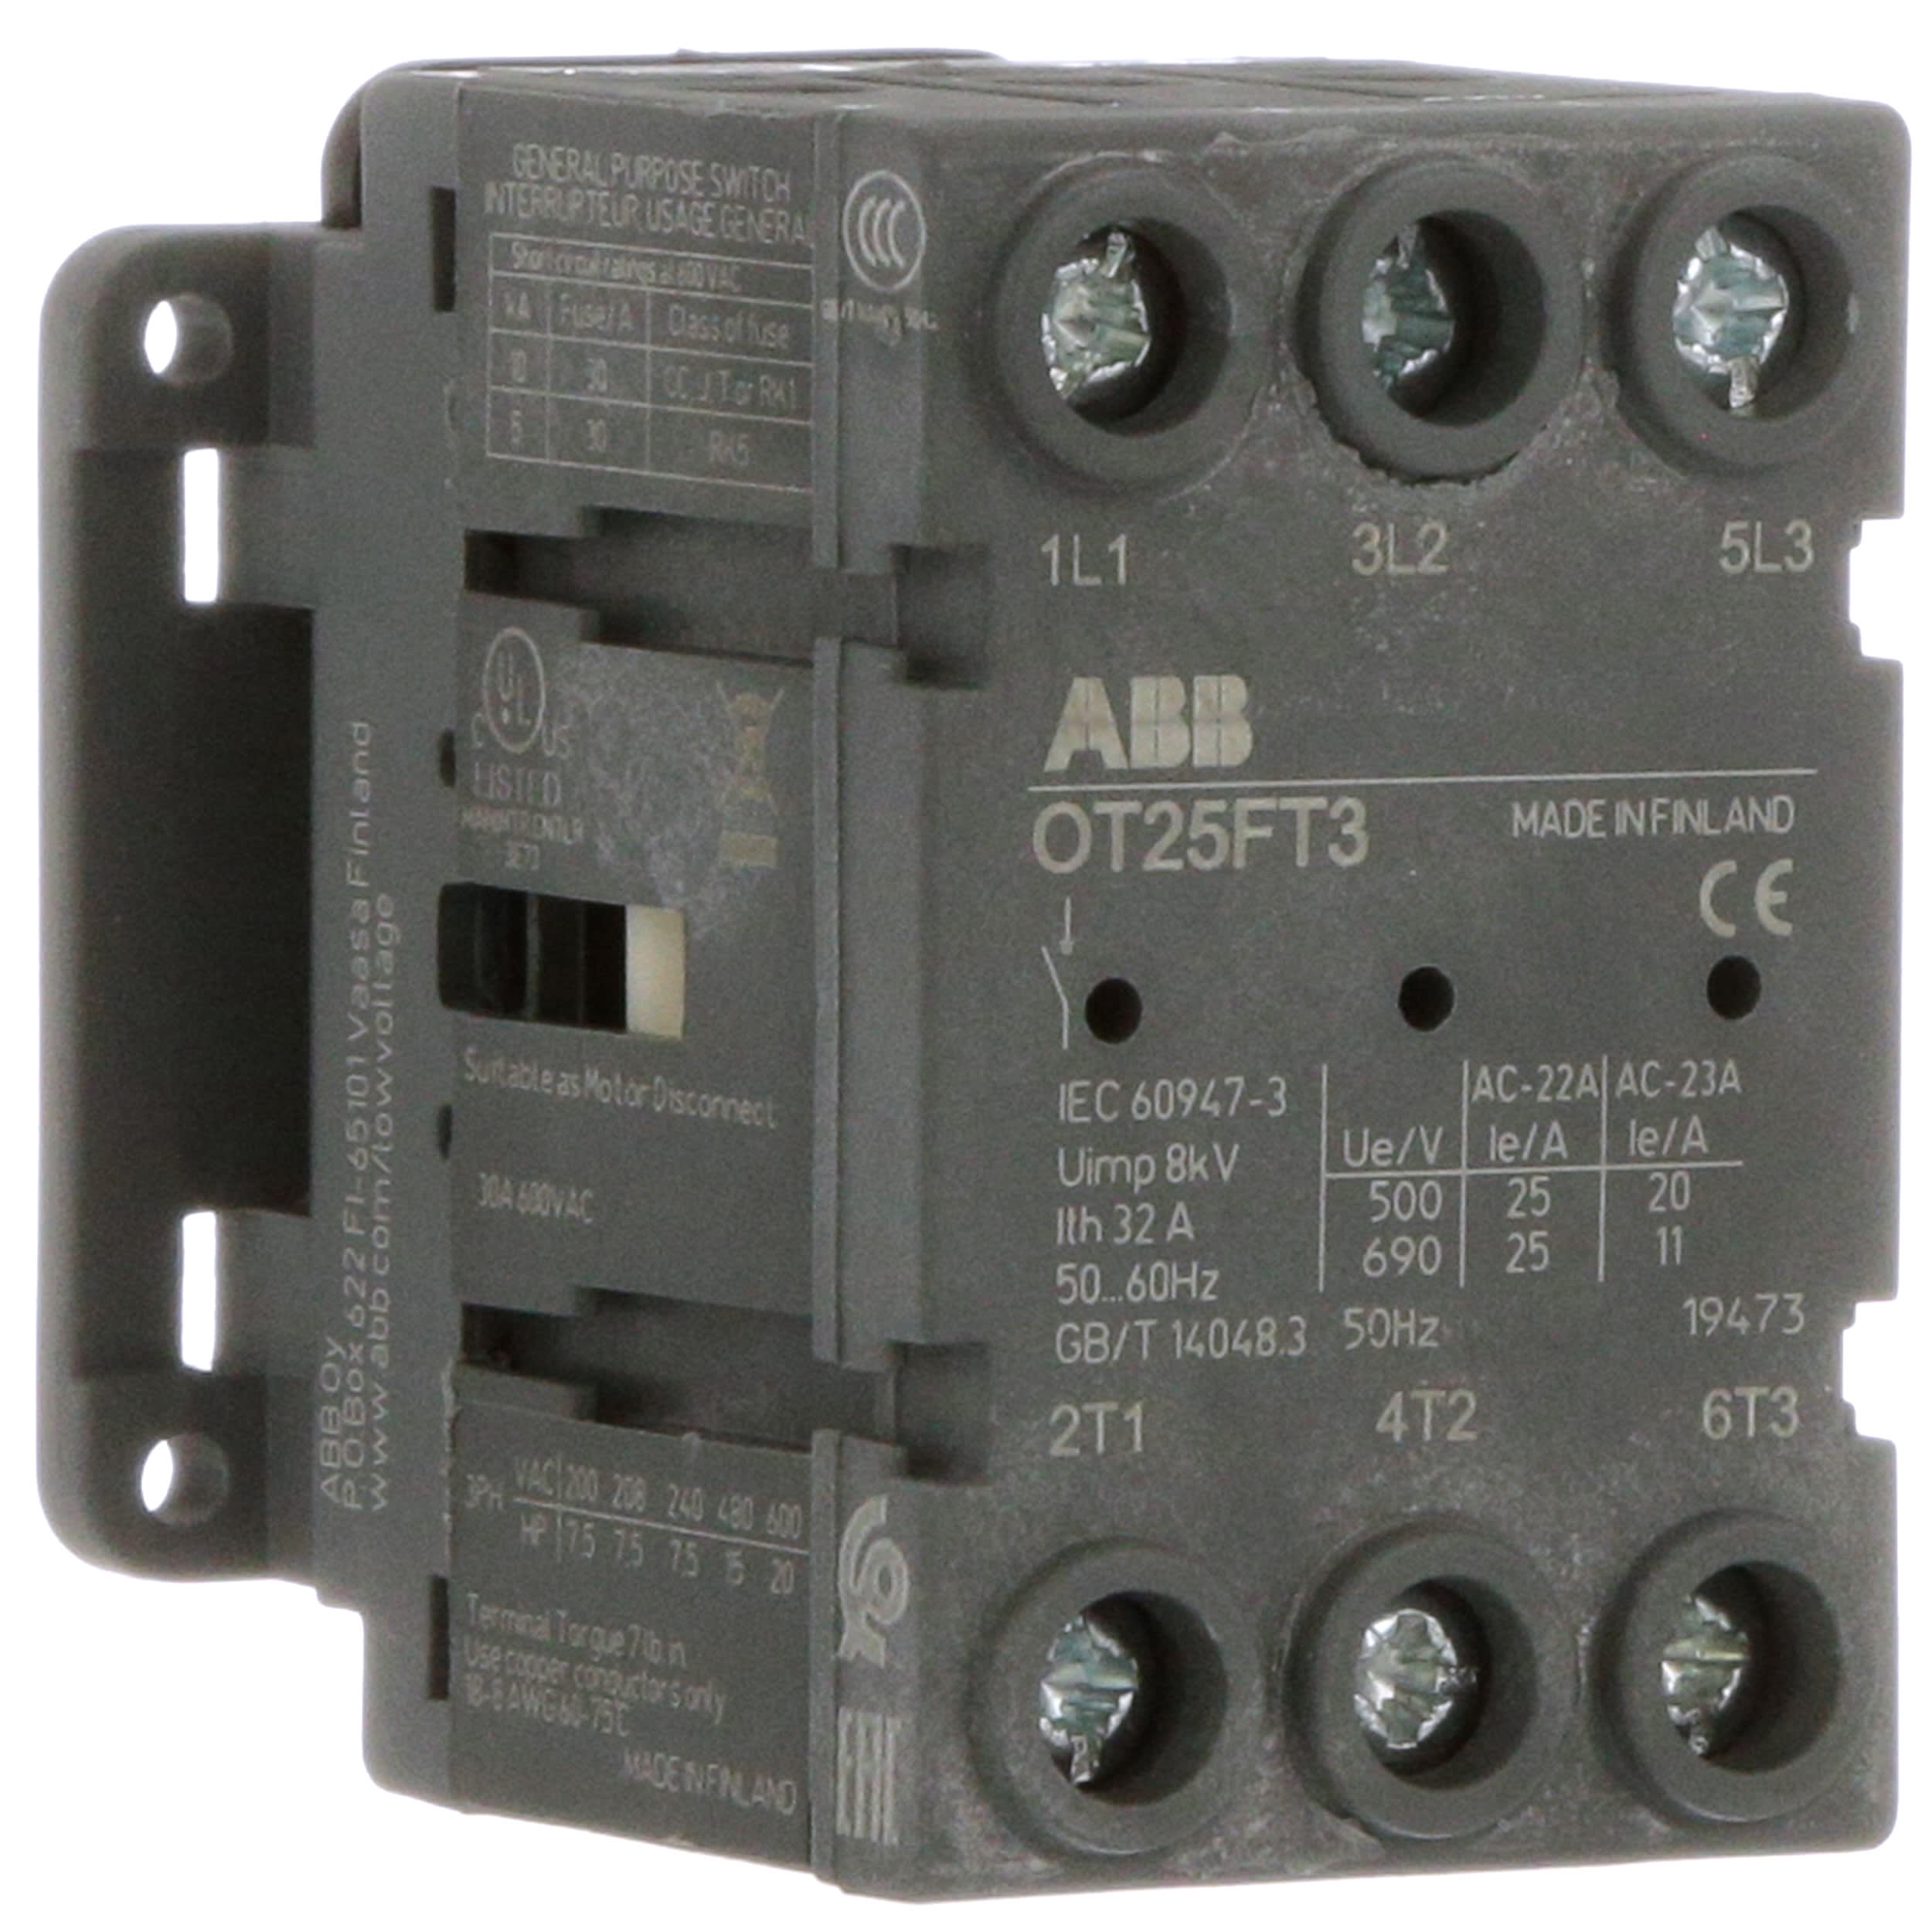 10 NEW ABB Asea Brown Boveri OT25E3 Disconects 3 pole 25 amp 600 volt SMALL size 